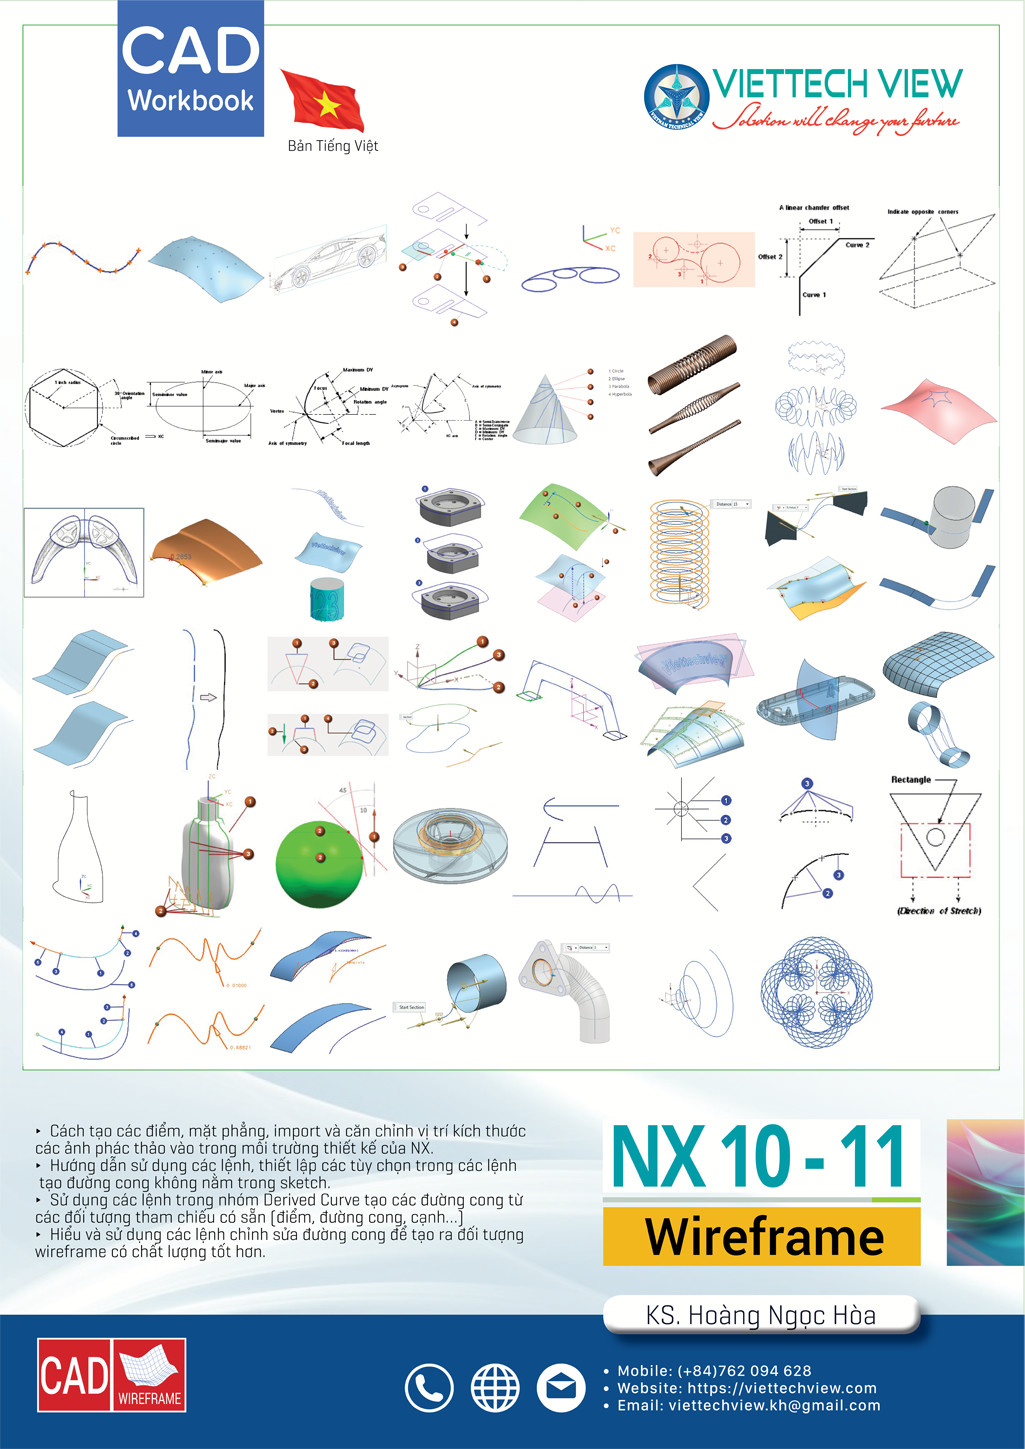 NX 10, 11, 12